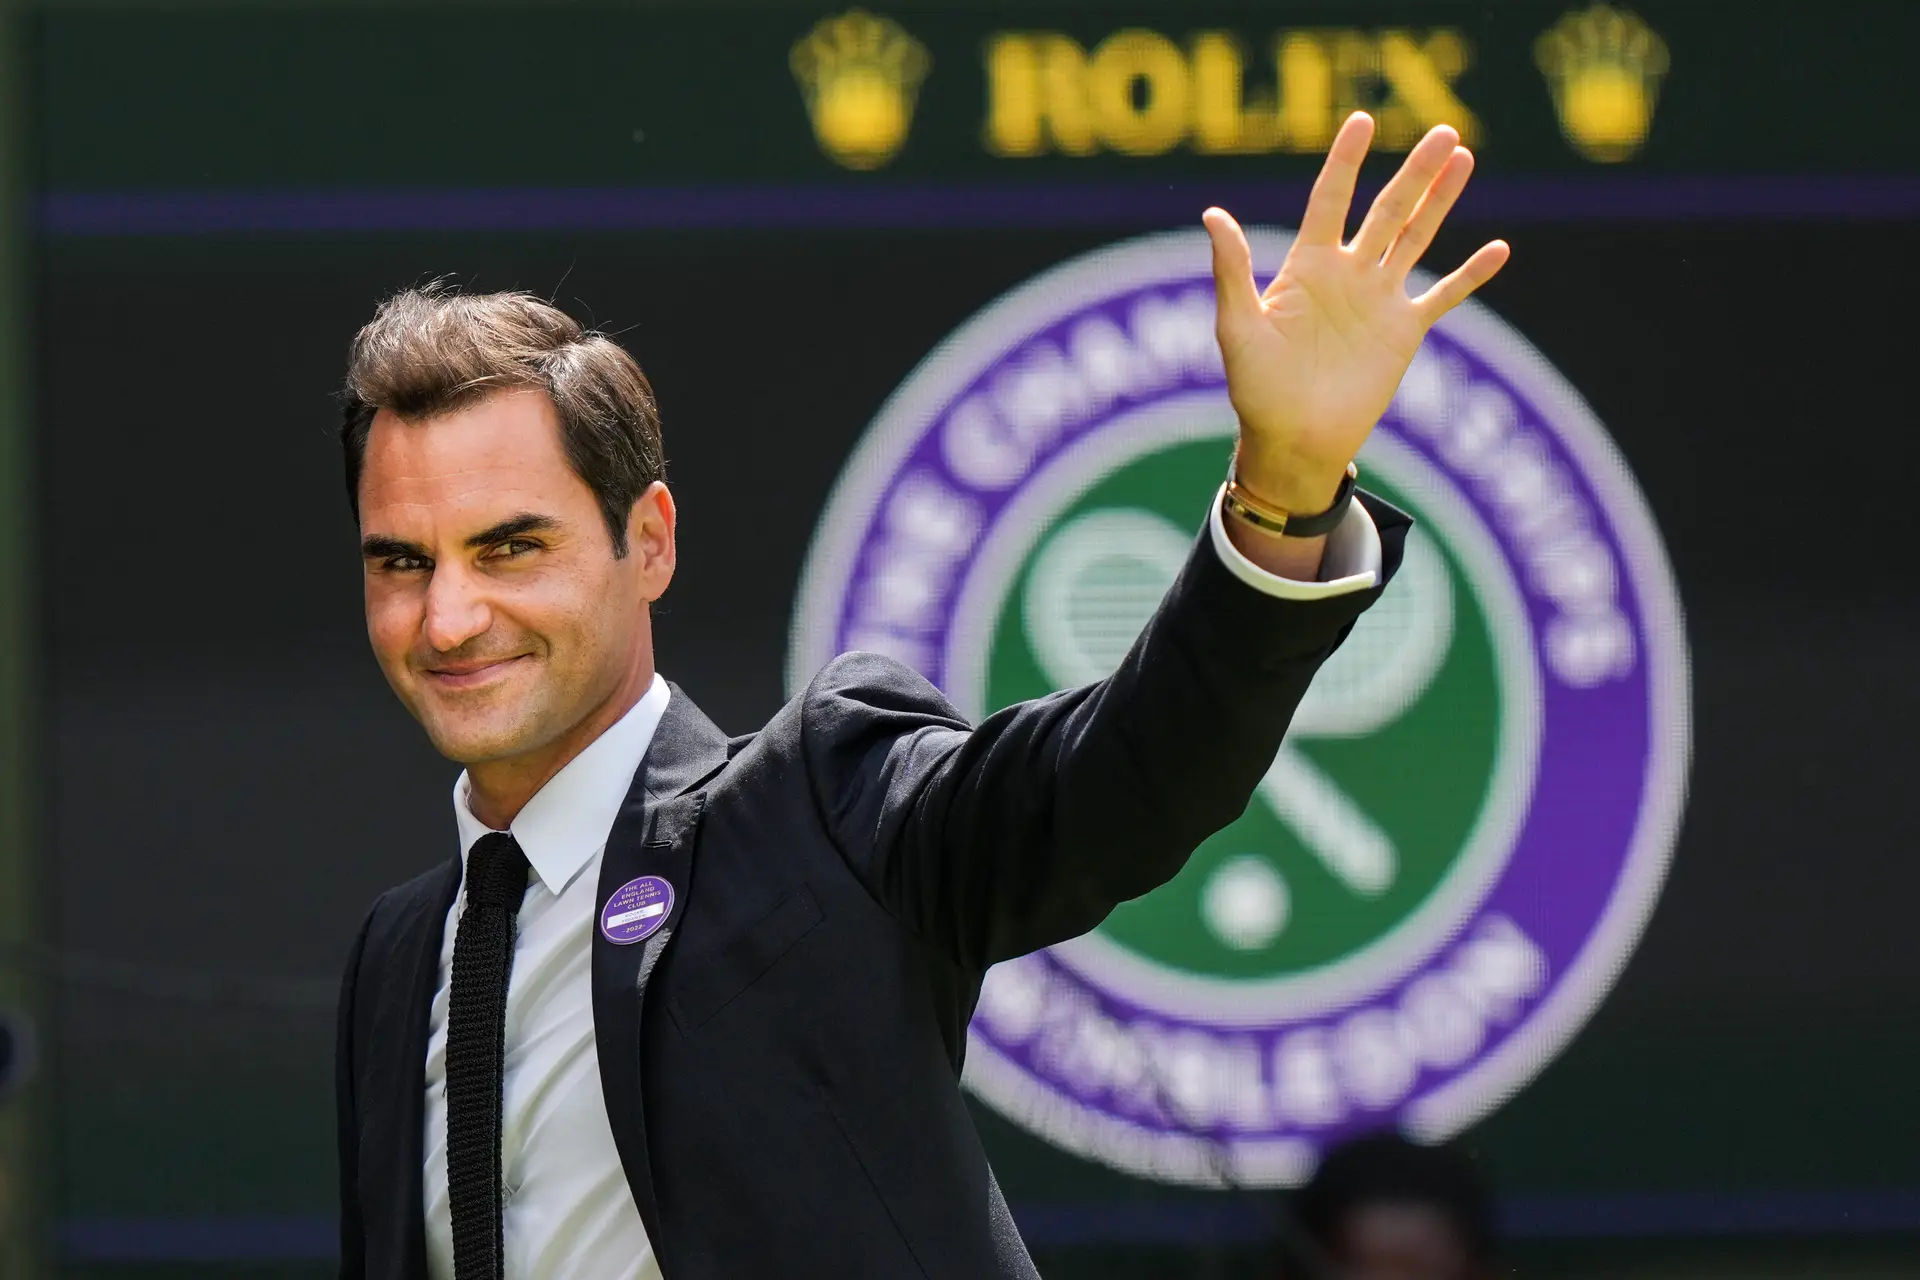 O adeus de uma lenda: Roger Federer anuncia fim da carreira